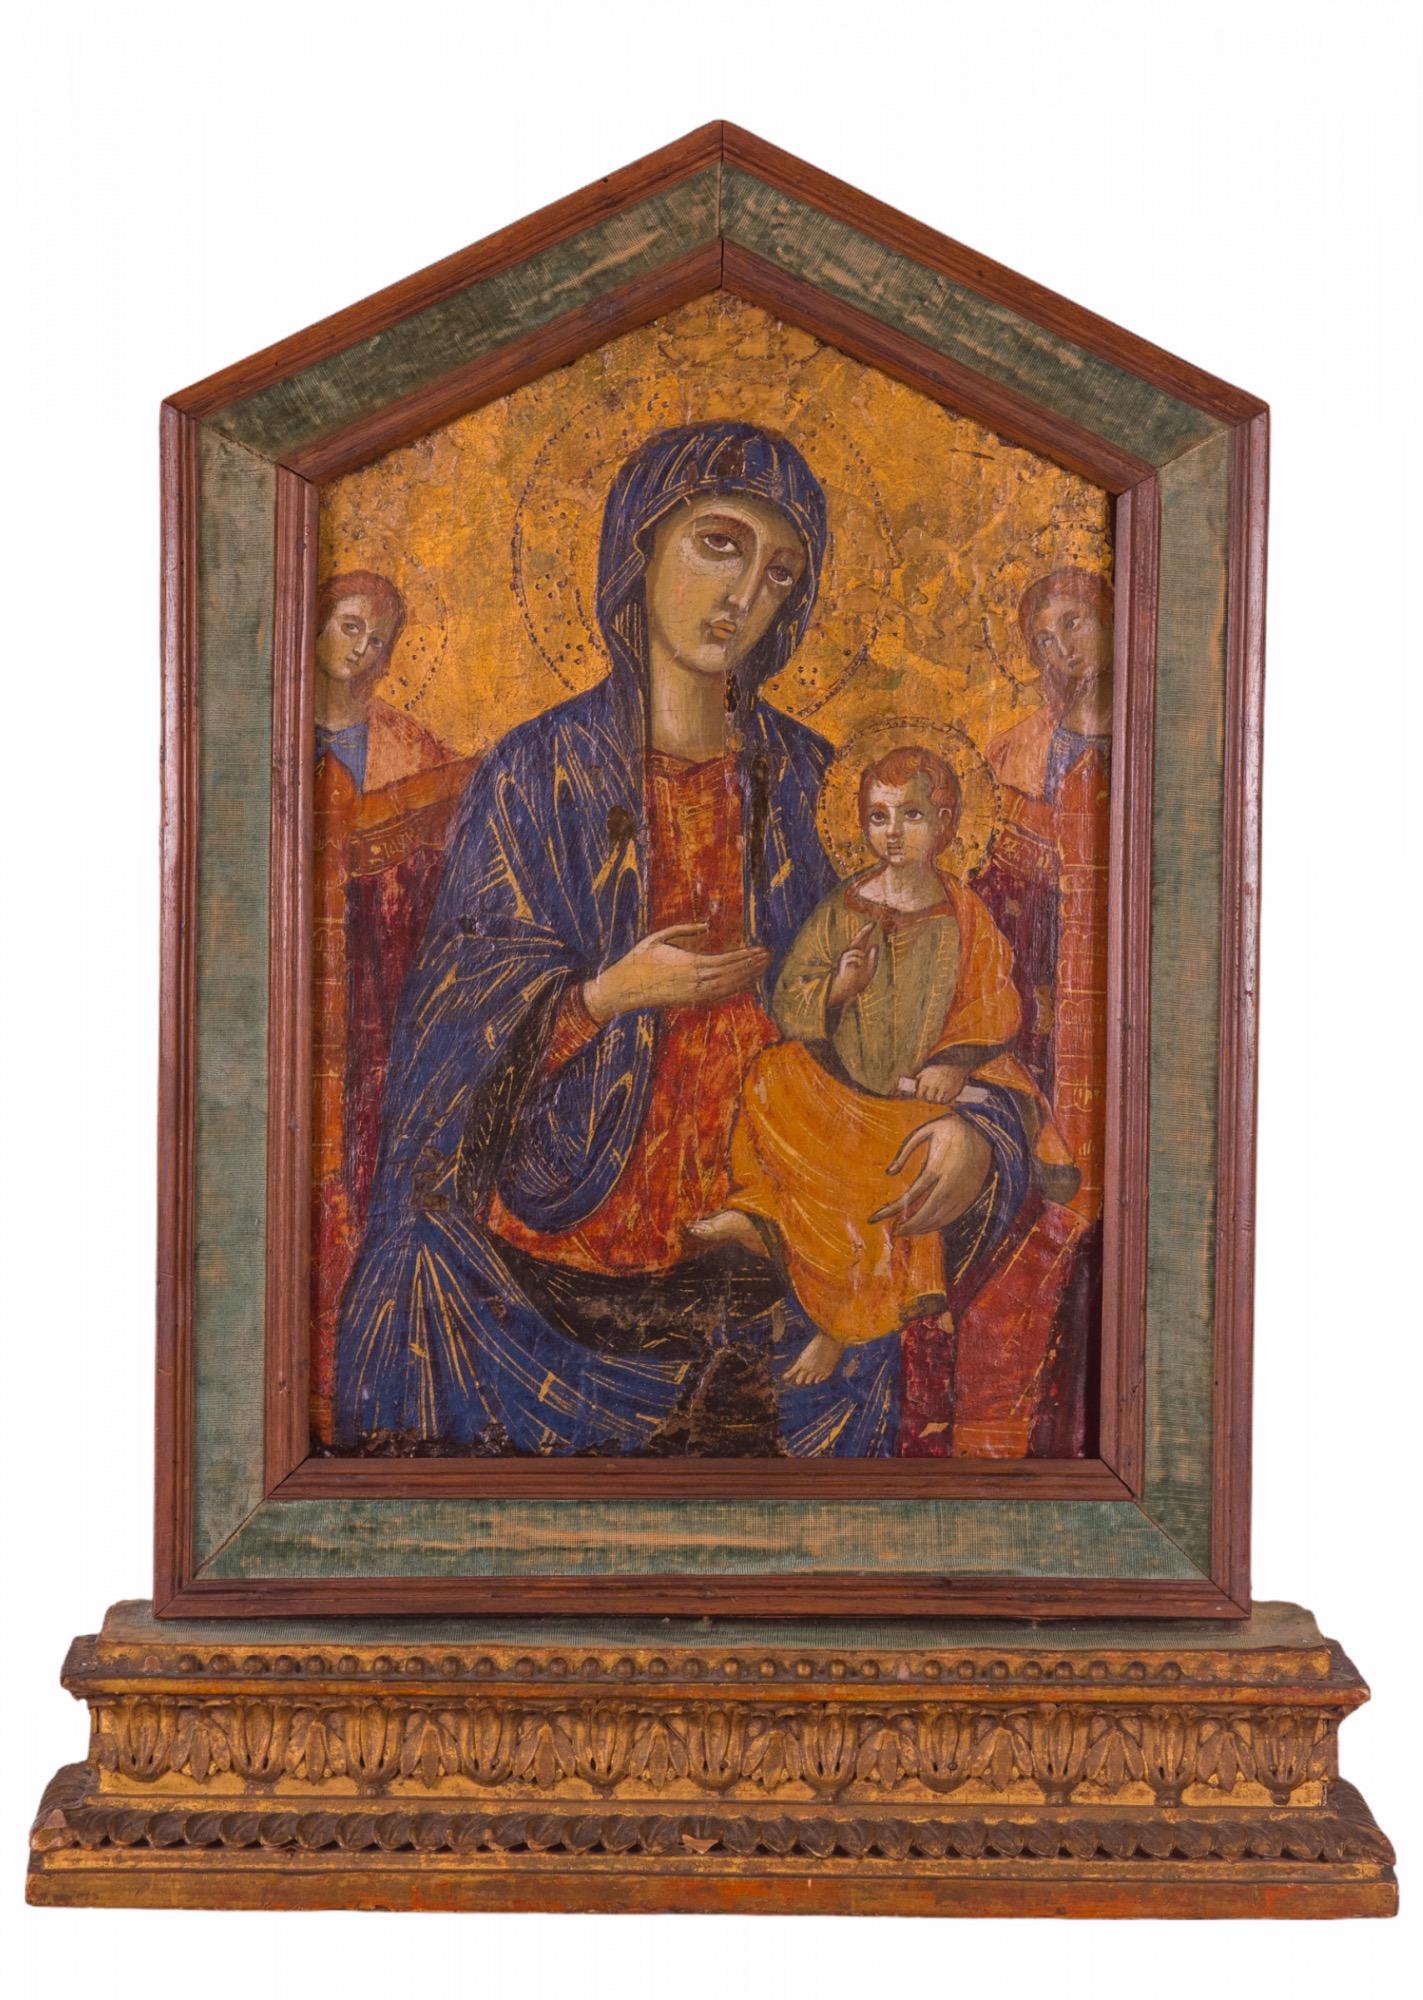 tableau italien du 17ème siècle, polychromé et doré sur panneau de bois, de style siennois, représentant la Vierge Enthronisée avec l'enfant et deux anges adorateurs derrière eux. Les halos sont magnifiquement ornés de poinçons. Elle est encadrée